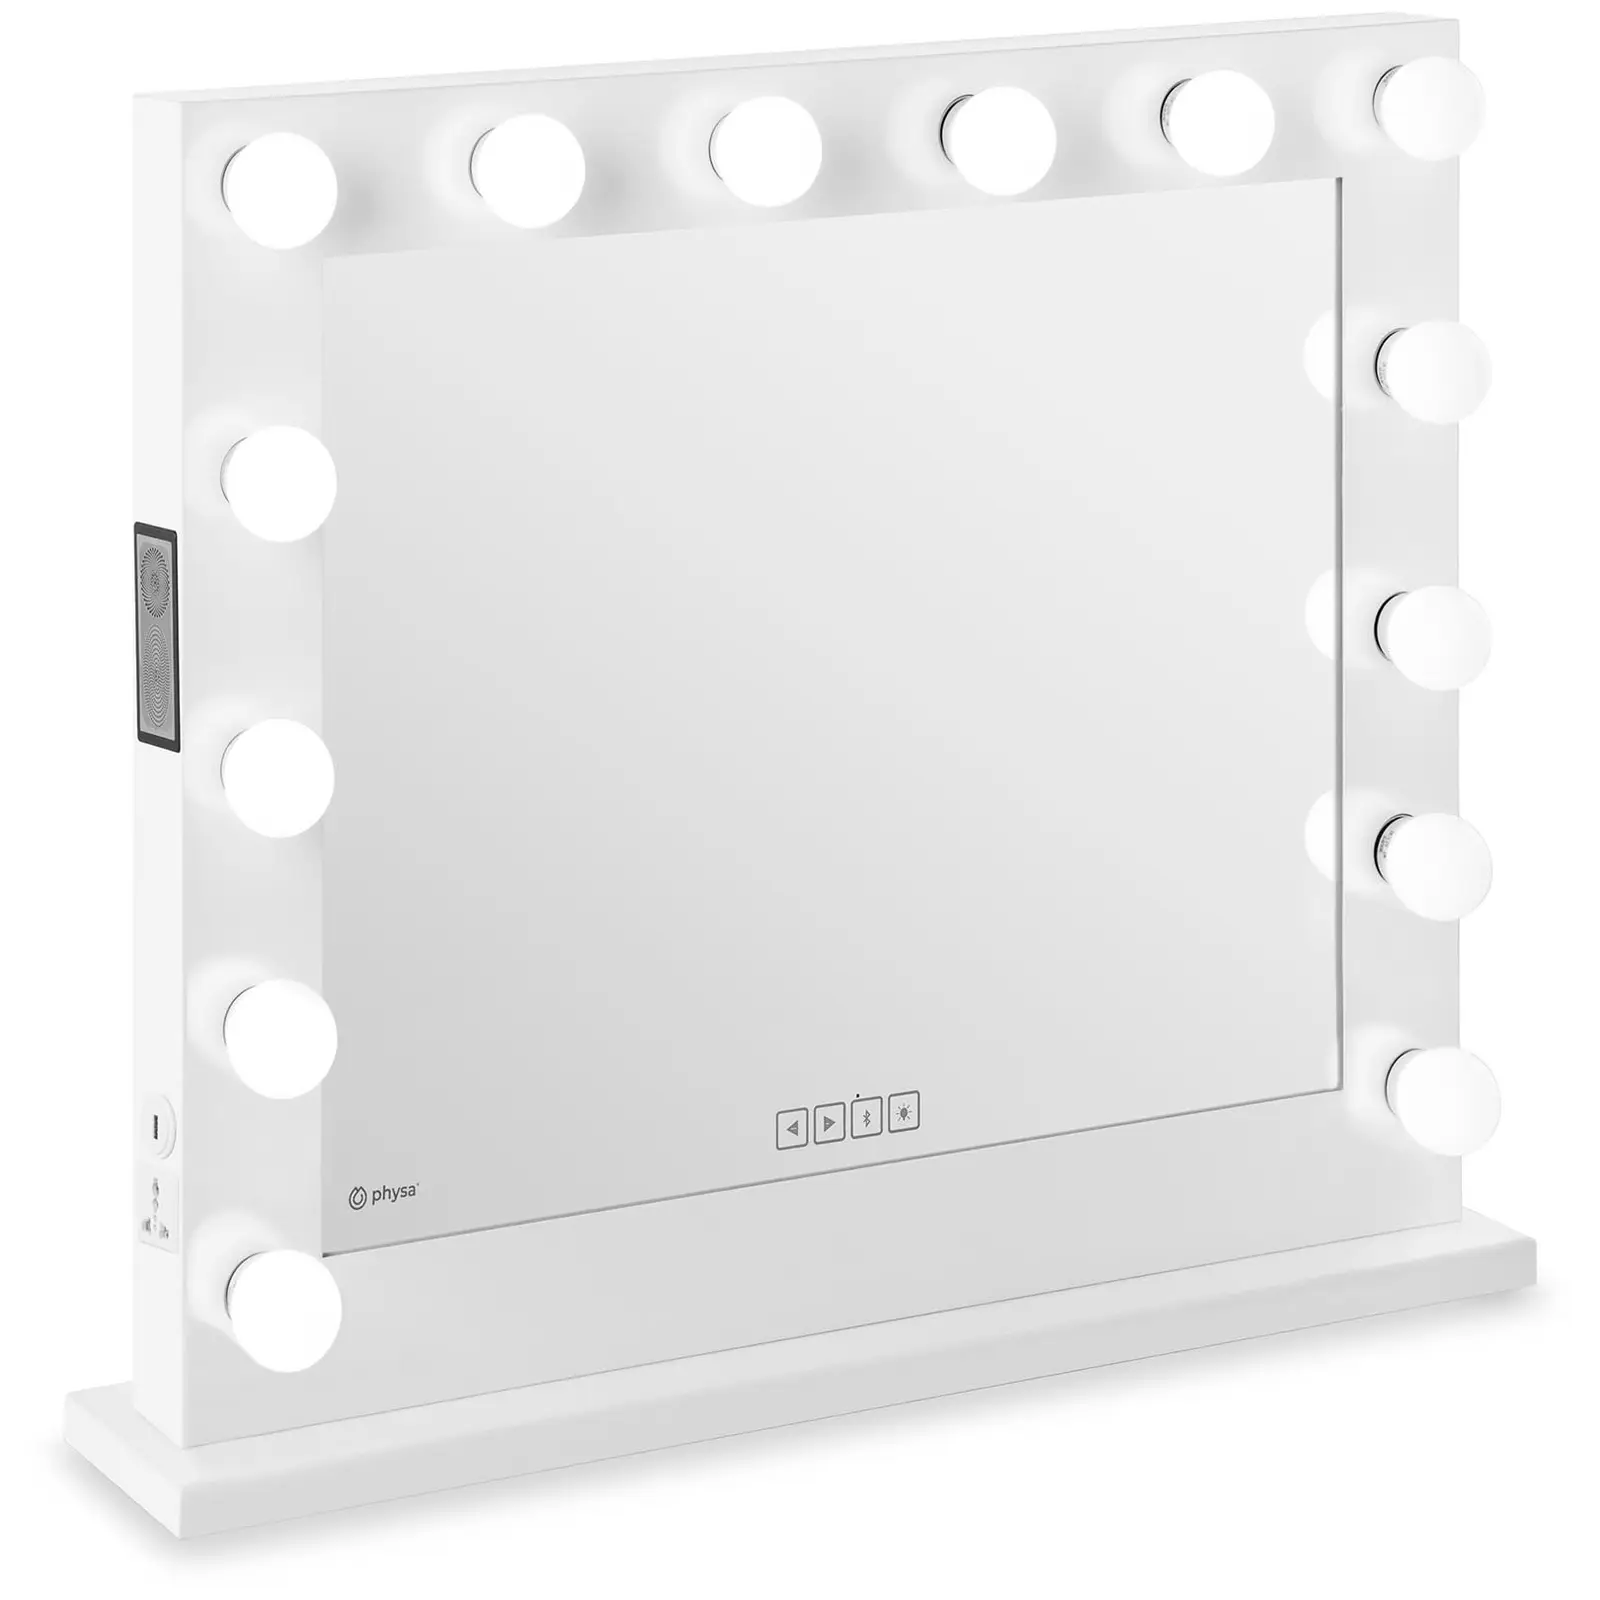 Makeupspejl med lys - hvidt - 14 LED - firkantet - højttaler